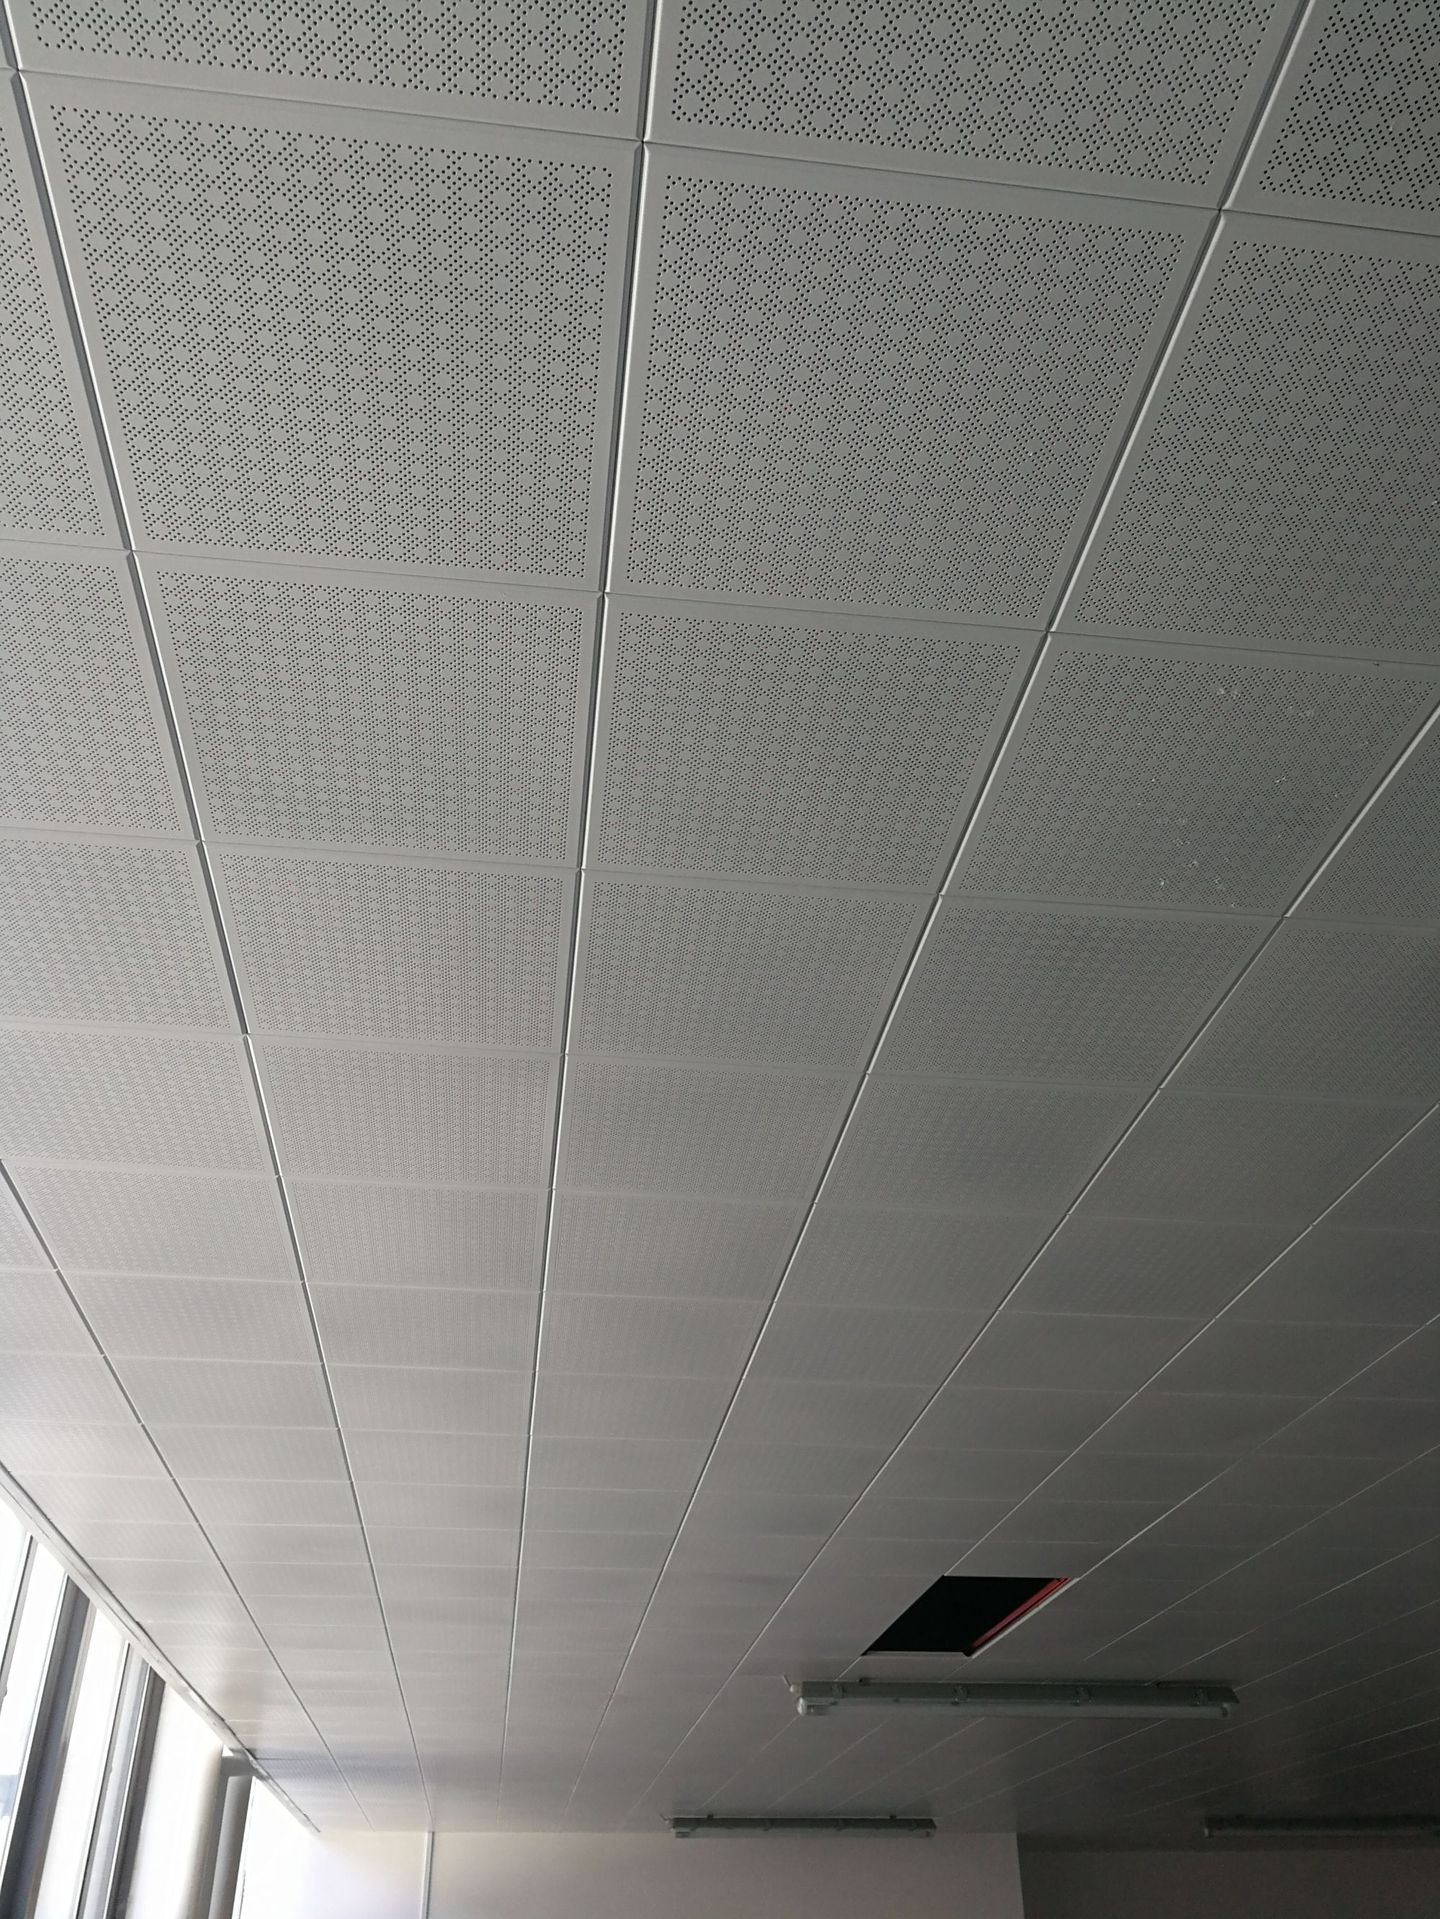 集成吊顶铝蜂窝大板铝扣板厨房卫生间阳台客厅办公室天花全套材料-阿里巴巴